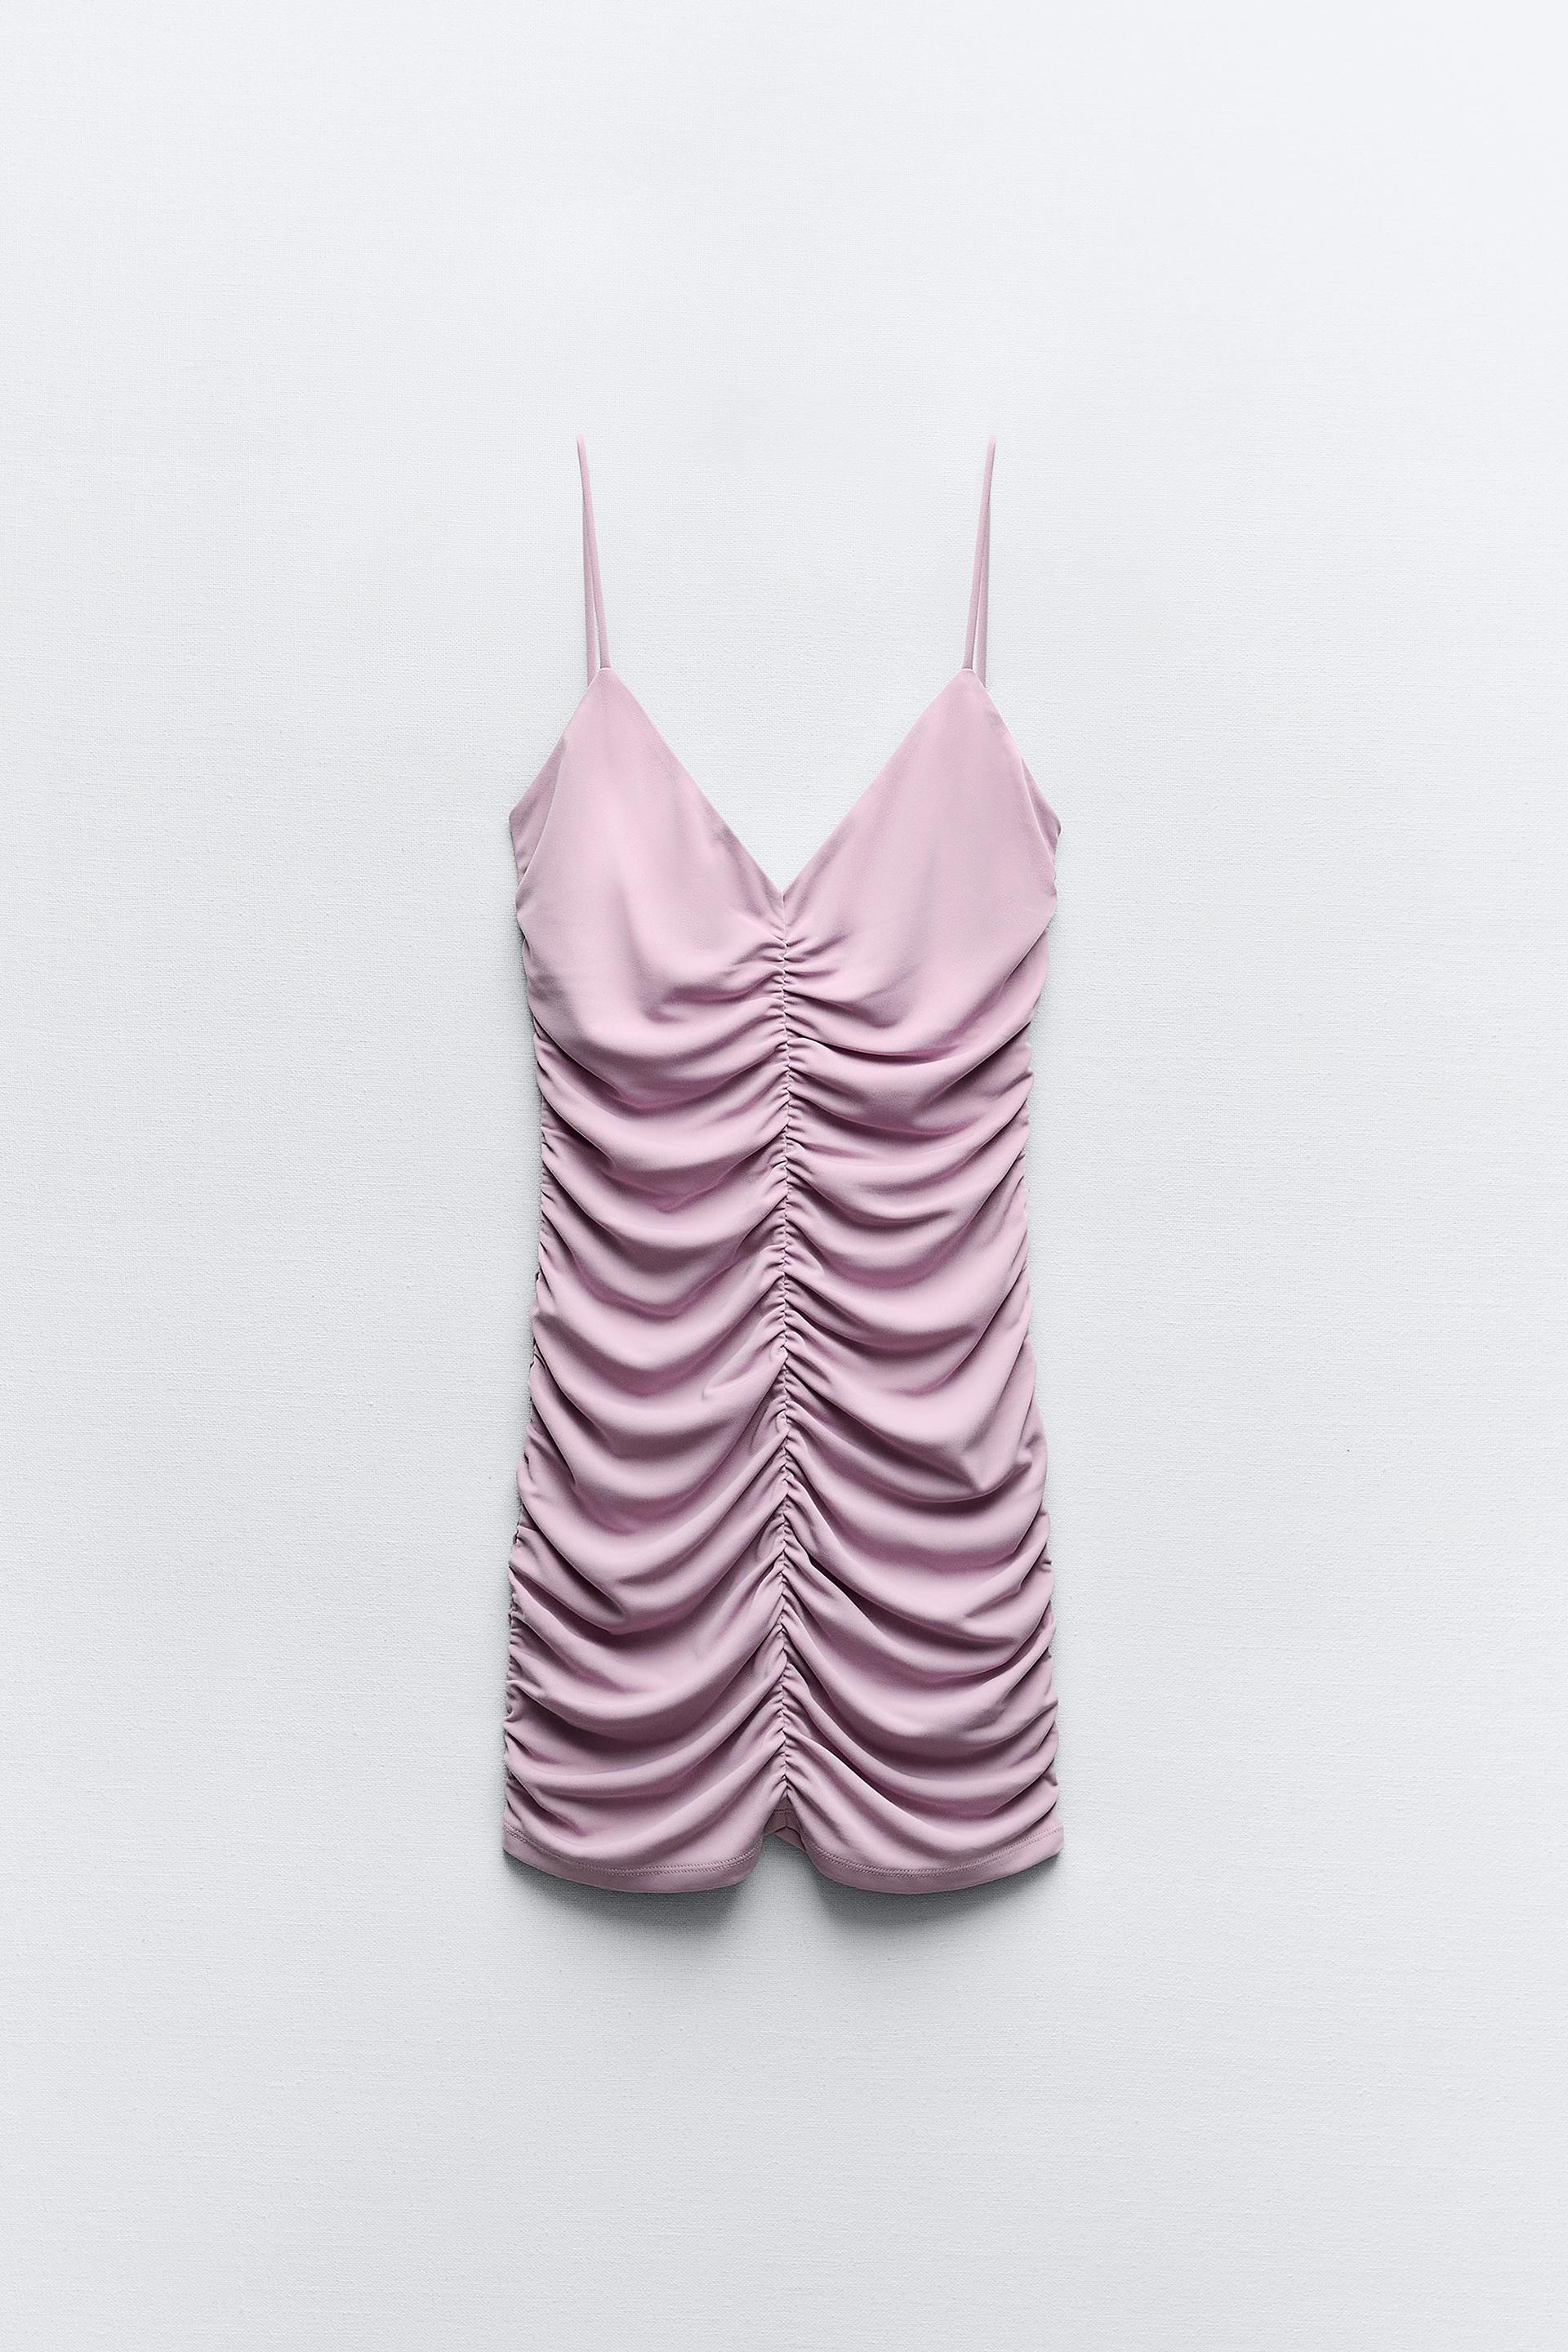 Zara Zebra Dress – Pink Plastic